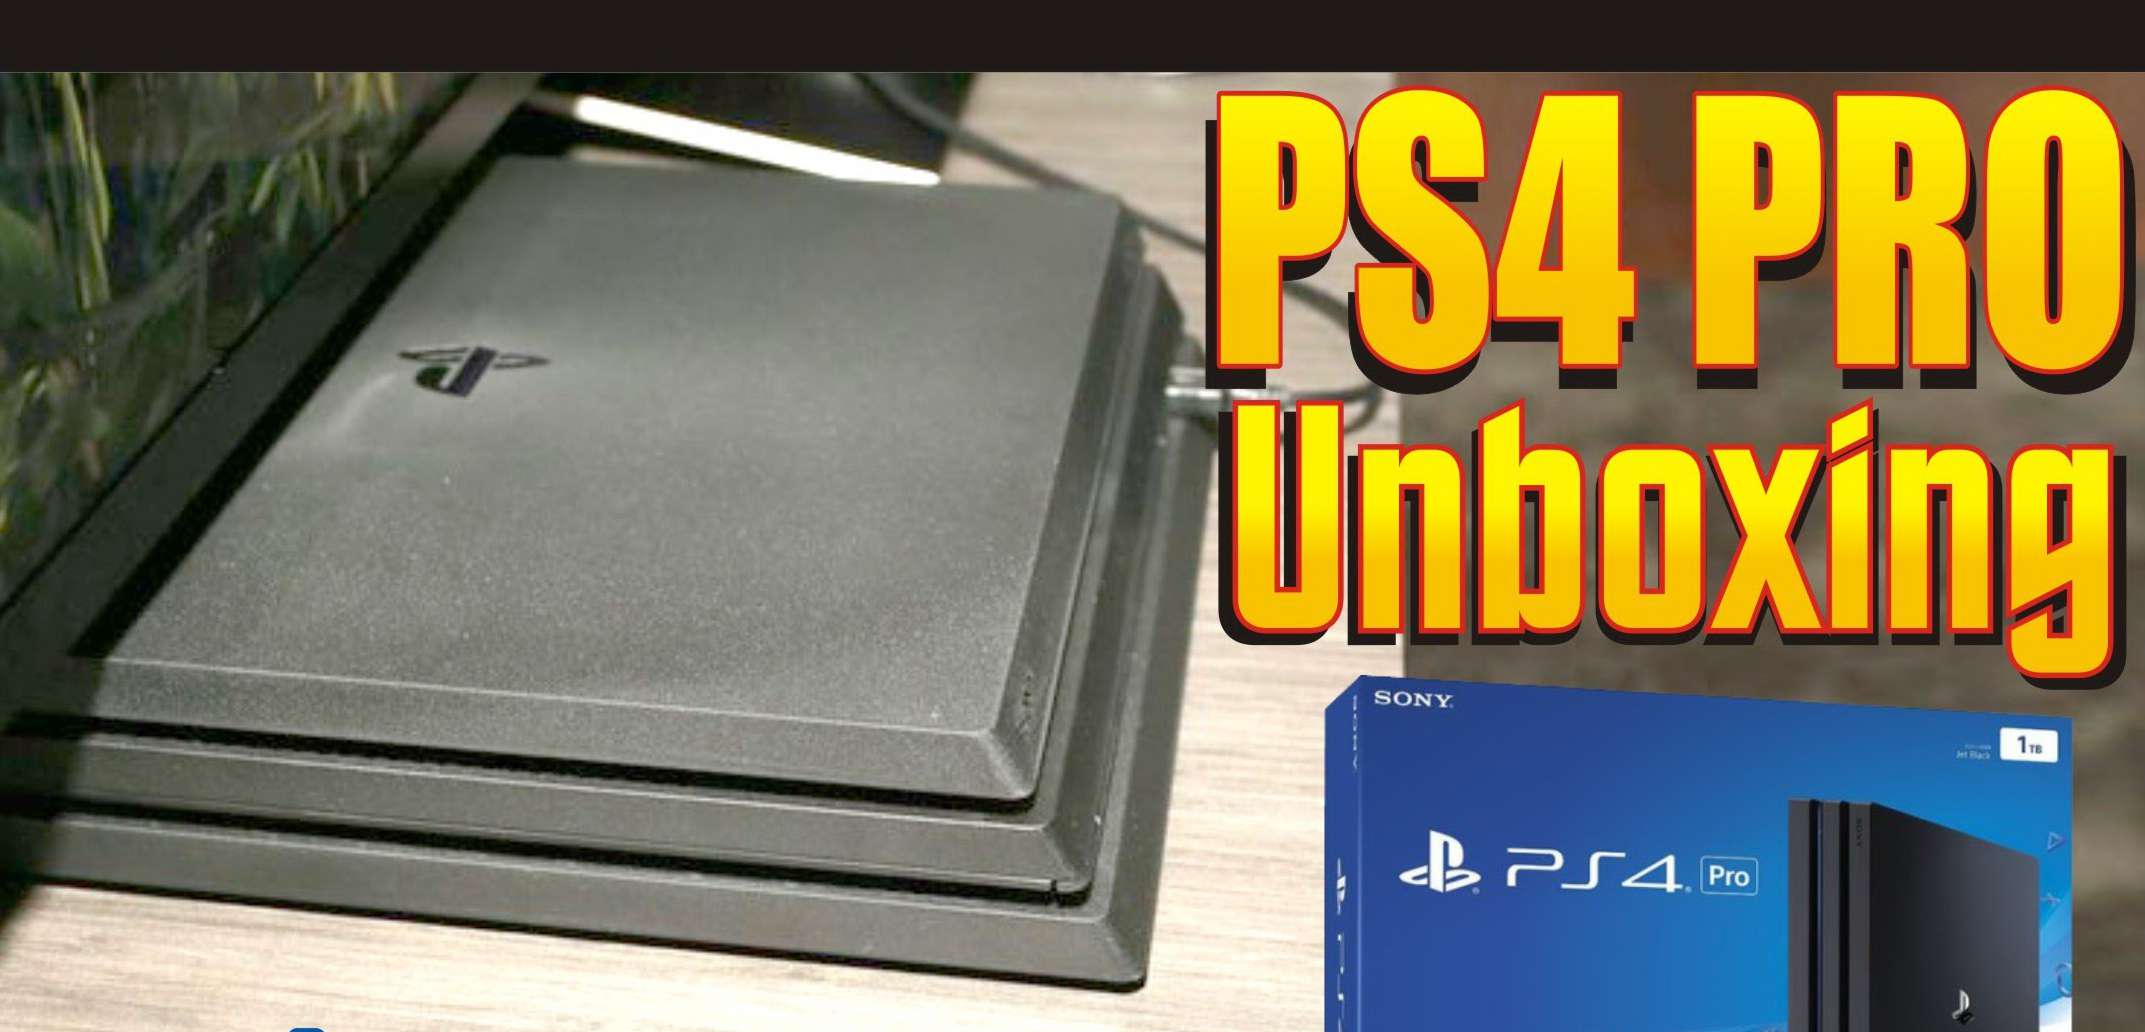 PS4 Pro nie jest aż takim &quot;grubasem&quot; - porównanie gabarytów nowej konsoli i unboxingi!